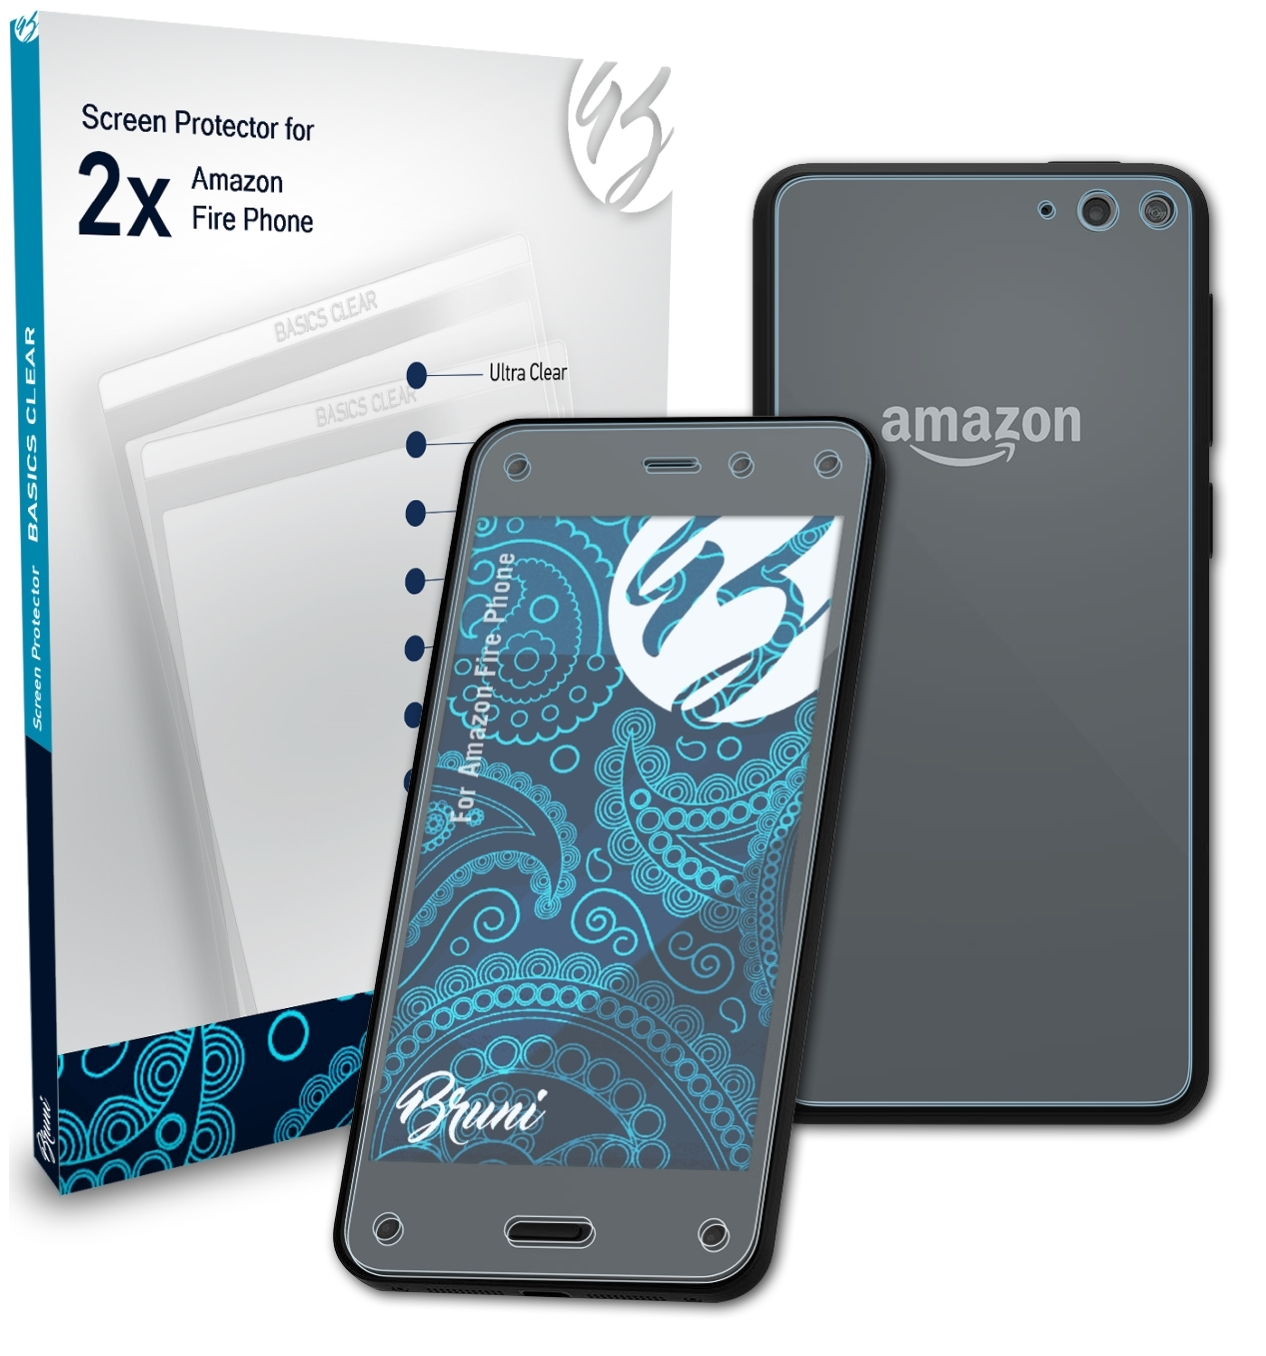 2x BRUNI Basics-Clear Fire Phone) Amazon Schutzfolie(für